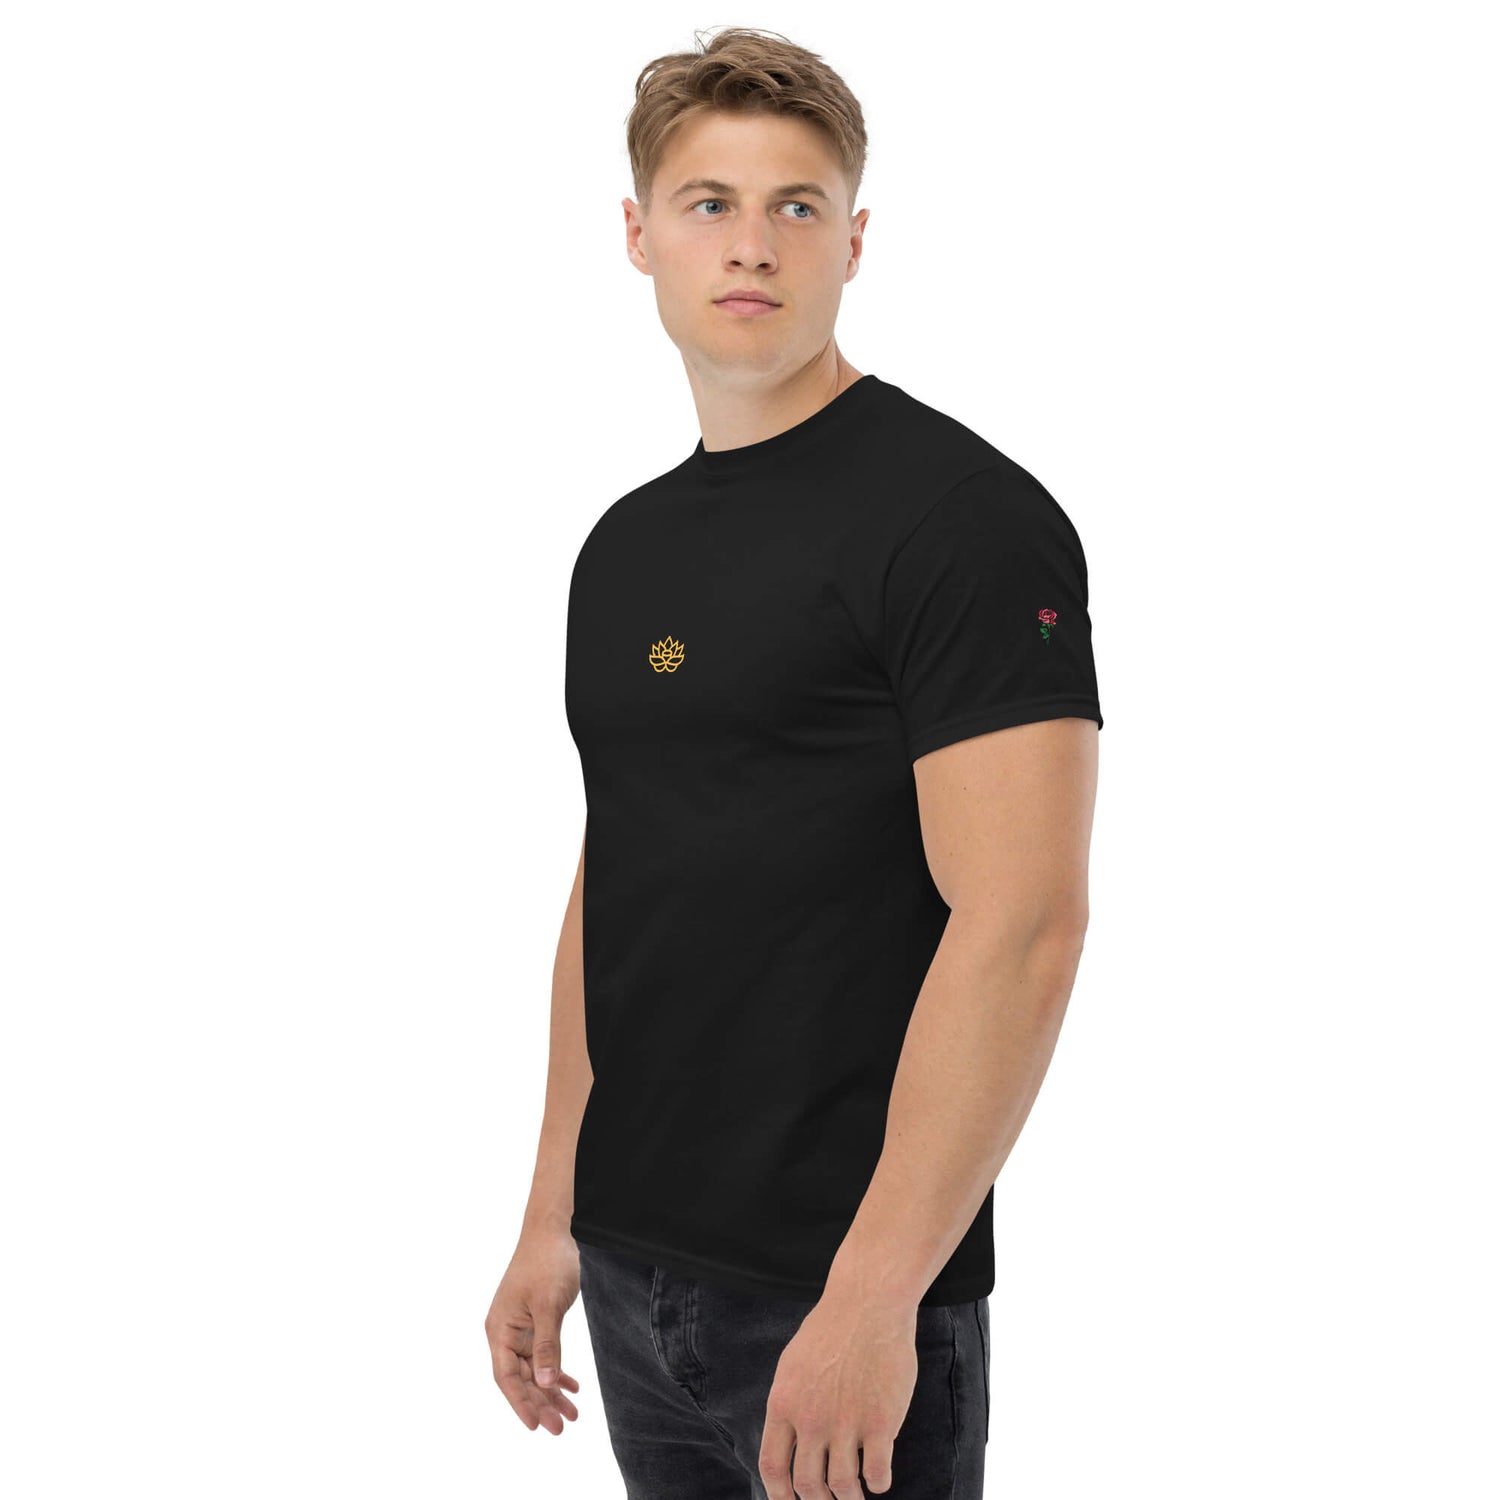 Men's T-Shirt Unique Fashion Clothing 